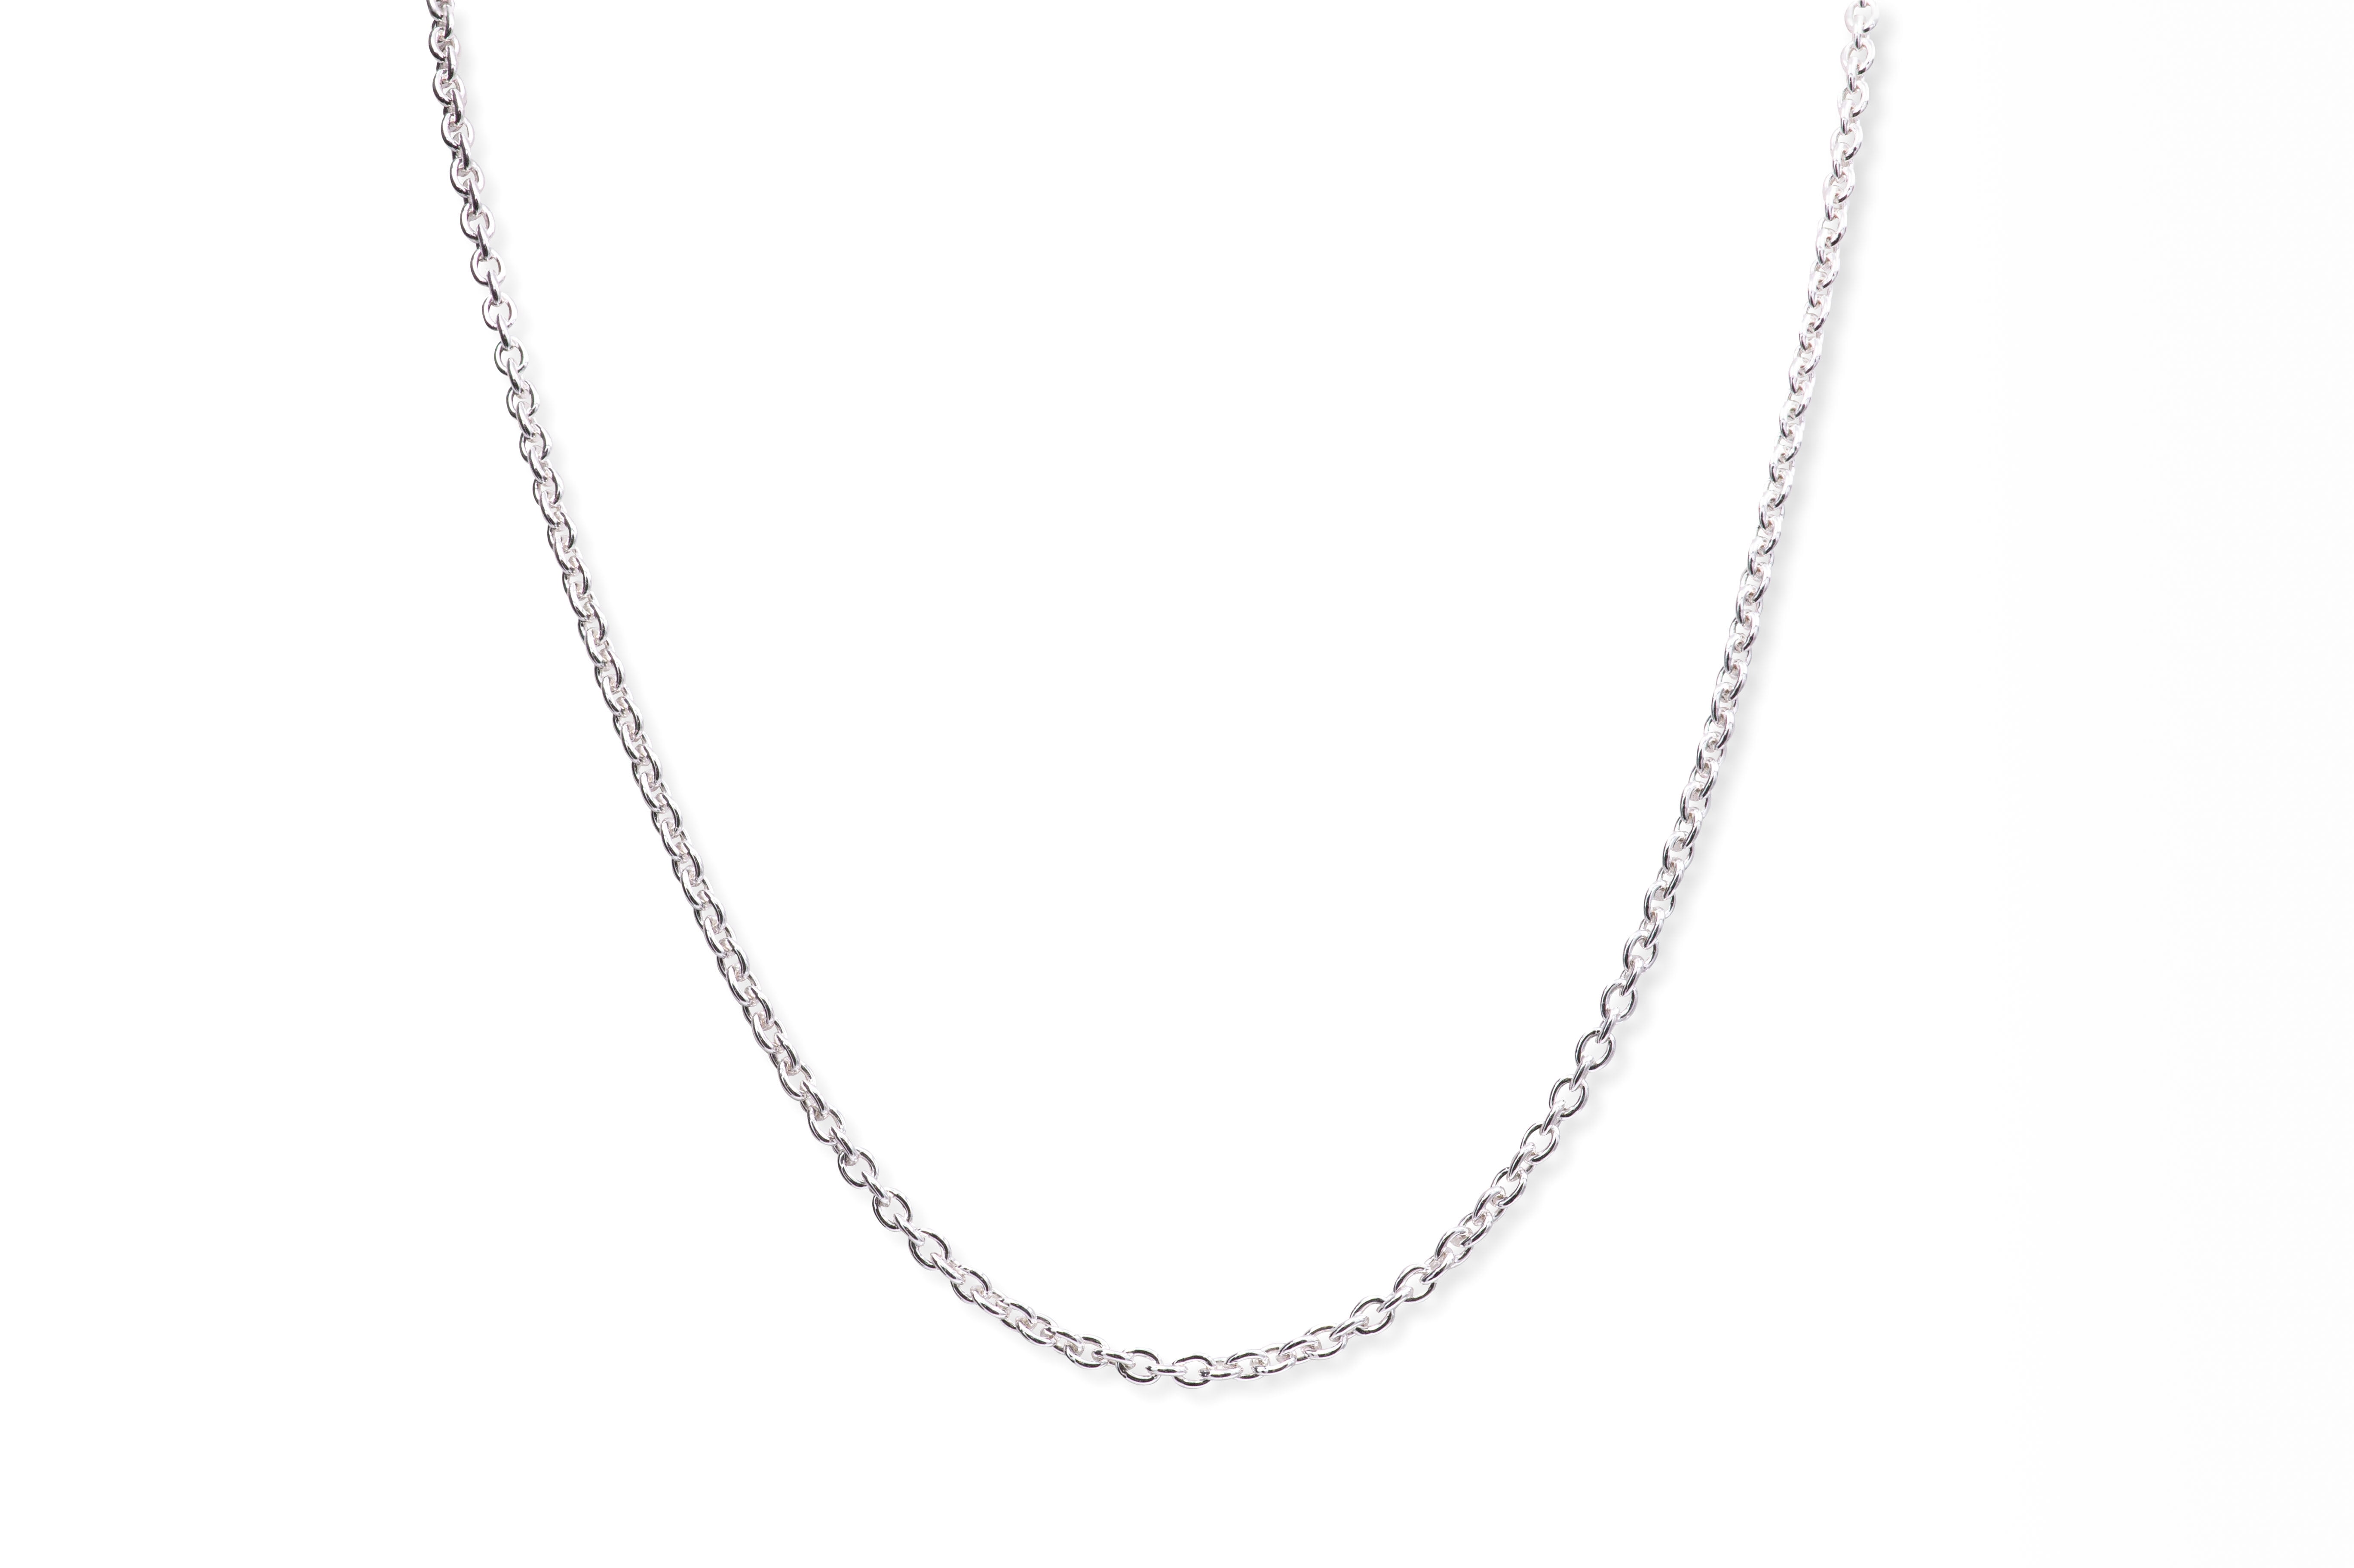 Quality Silver Plated Brilliant Necklace Chain 60cm Wholesale Bulk 5 pcs 